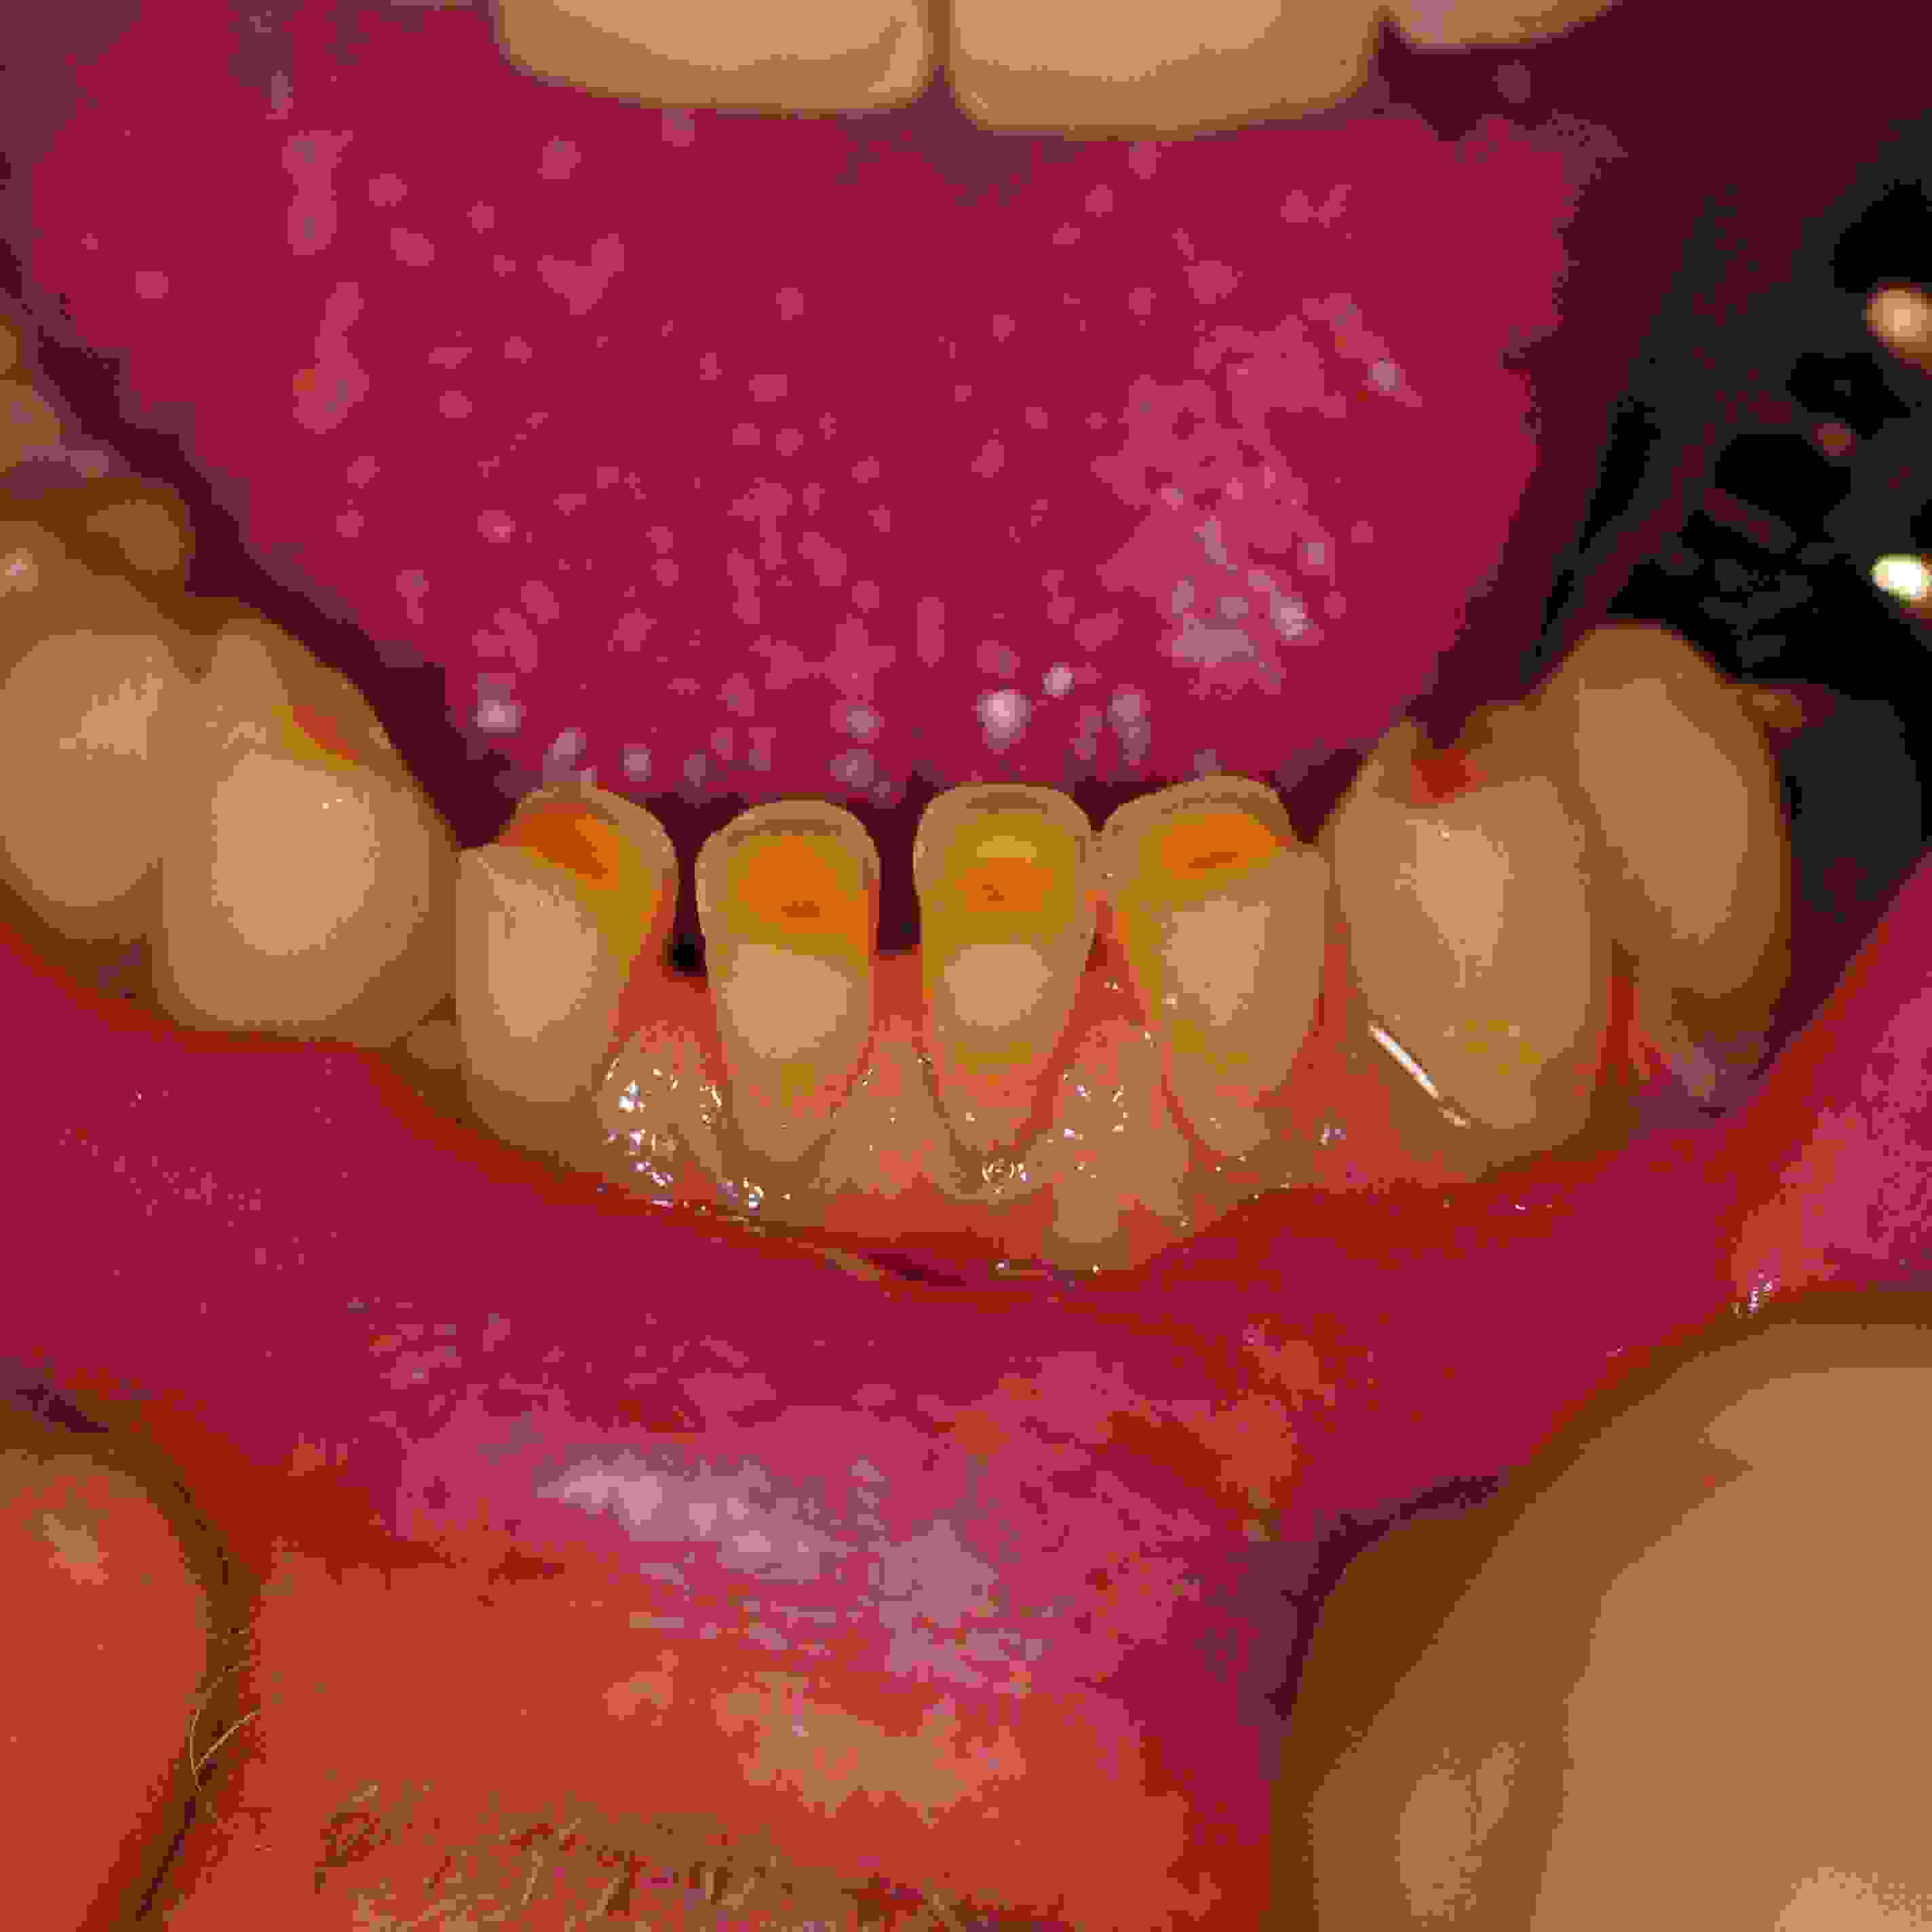 Worn front teeth